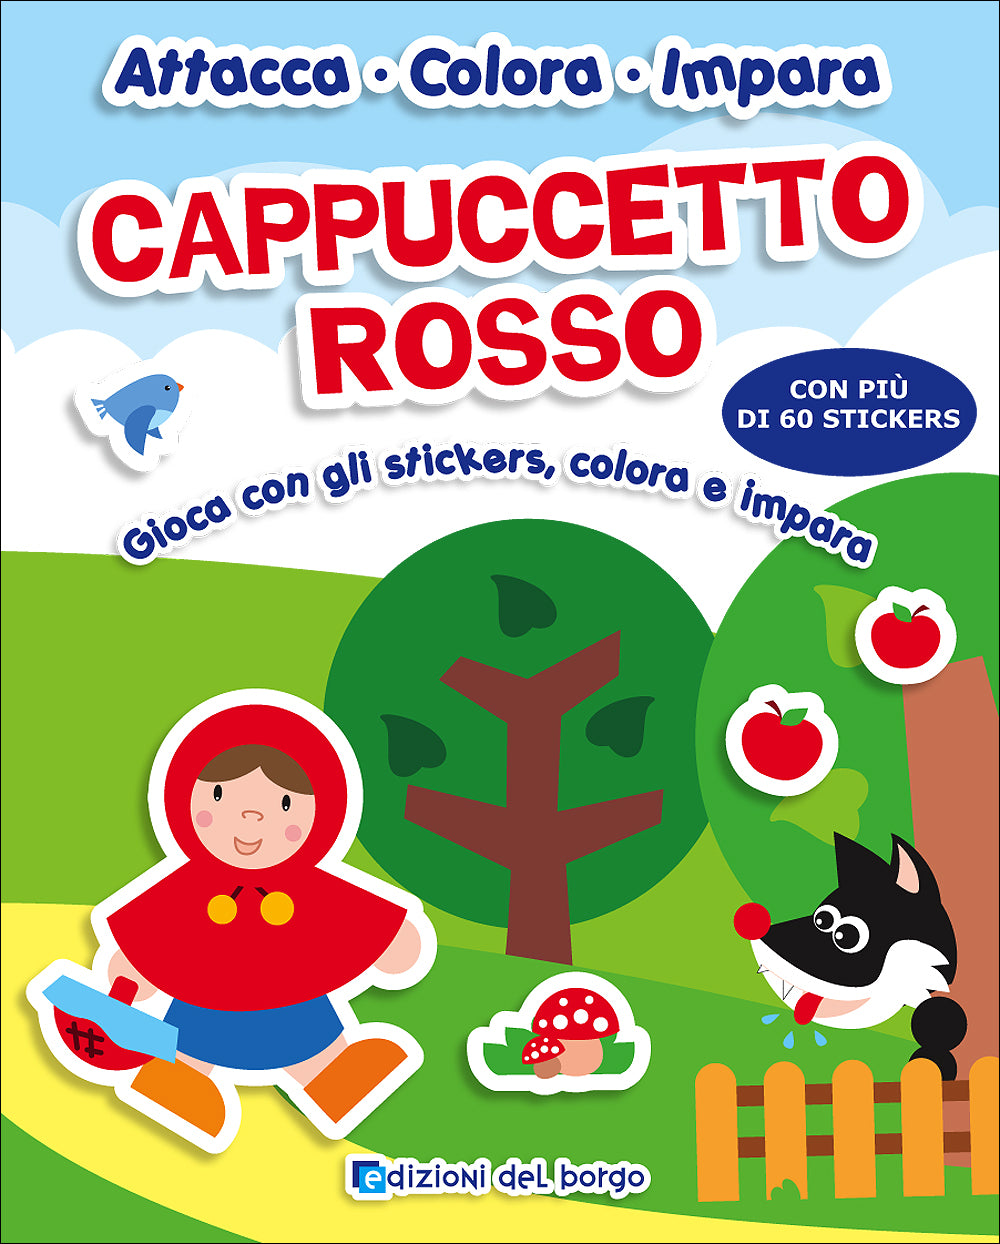 Cappuccetto Rosso::Gioca con gli stickers, colora e impara - Con più di 60 stickers